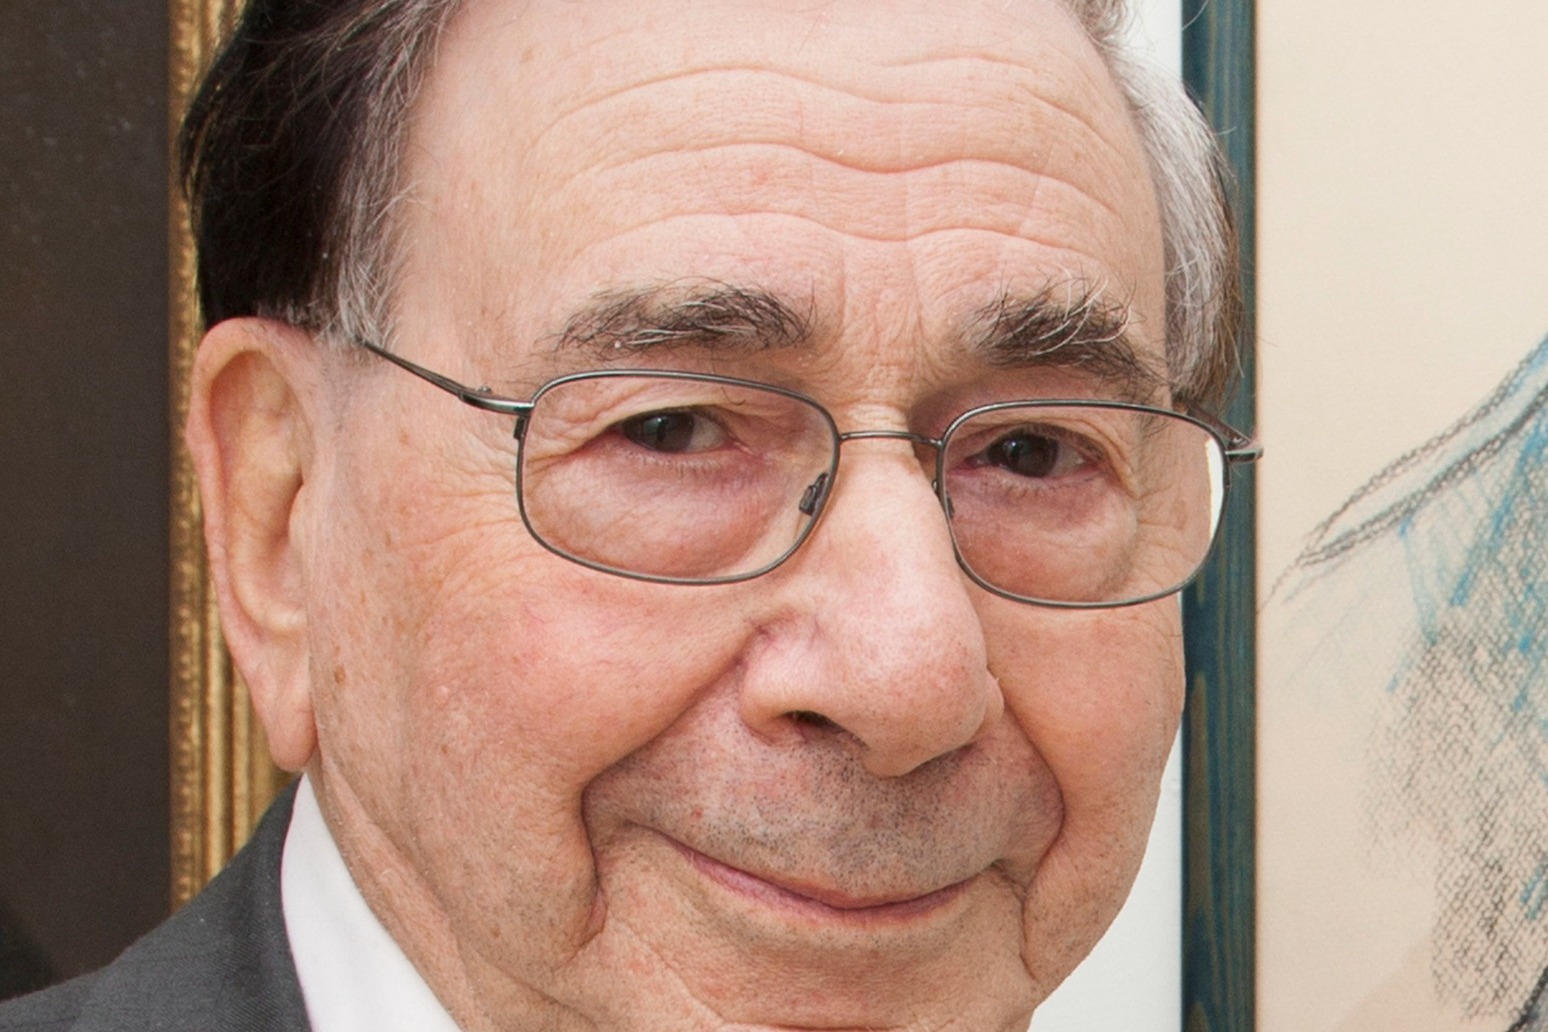 Pioneering transplant surgeon Professor Sir Roy Calne dies aged 93 